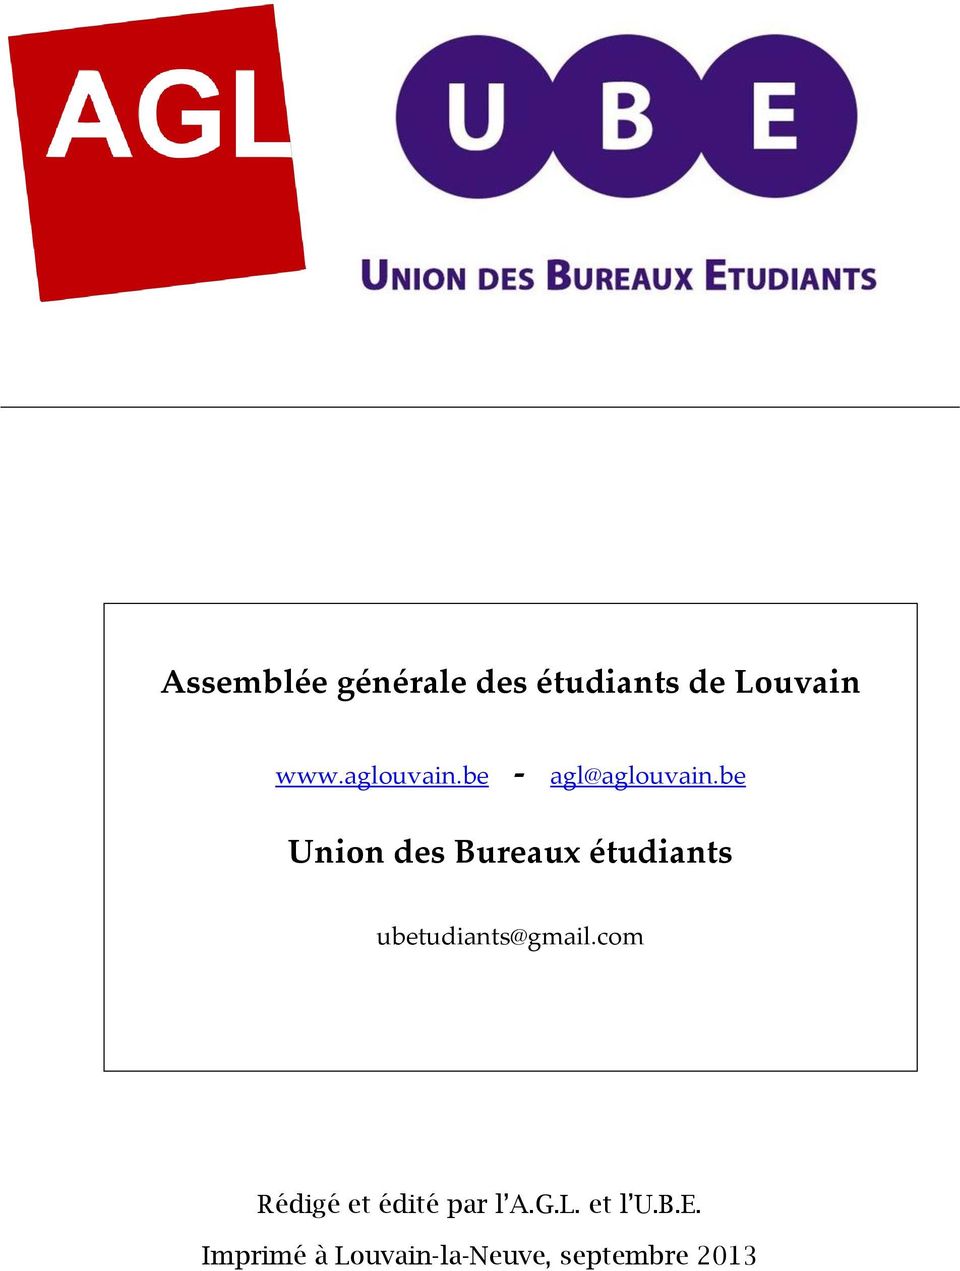 be Union des Bureaux étudiants ubetudiants@gmail.